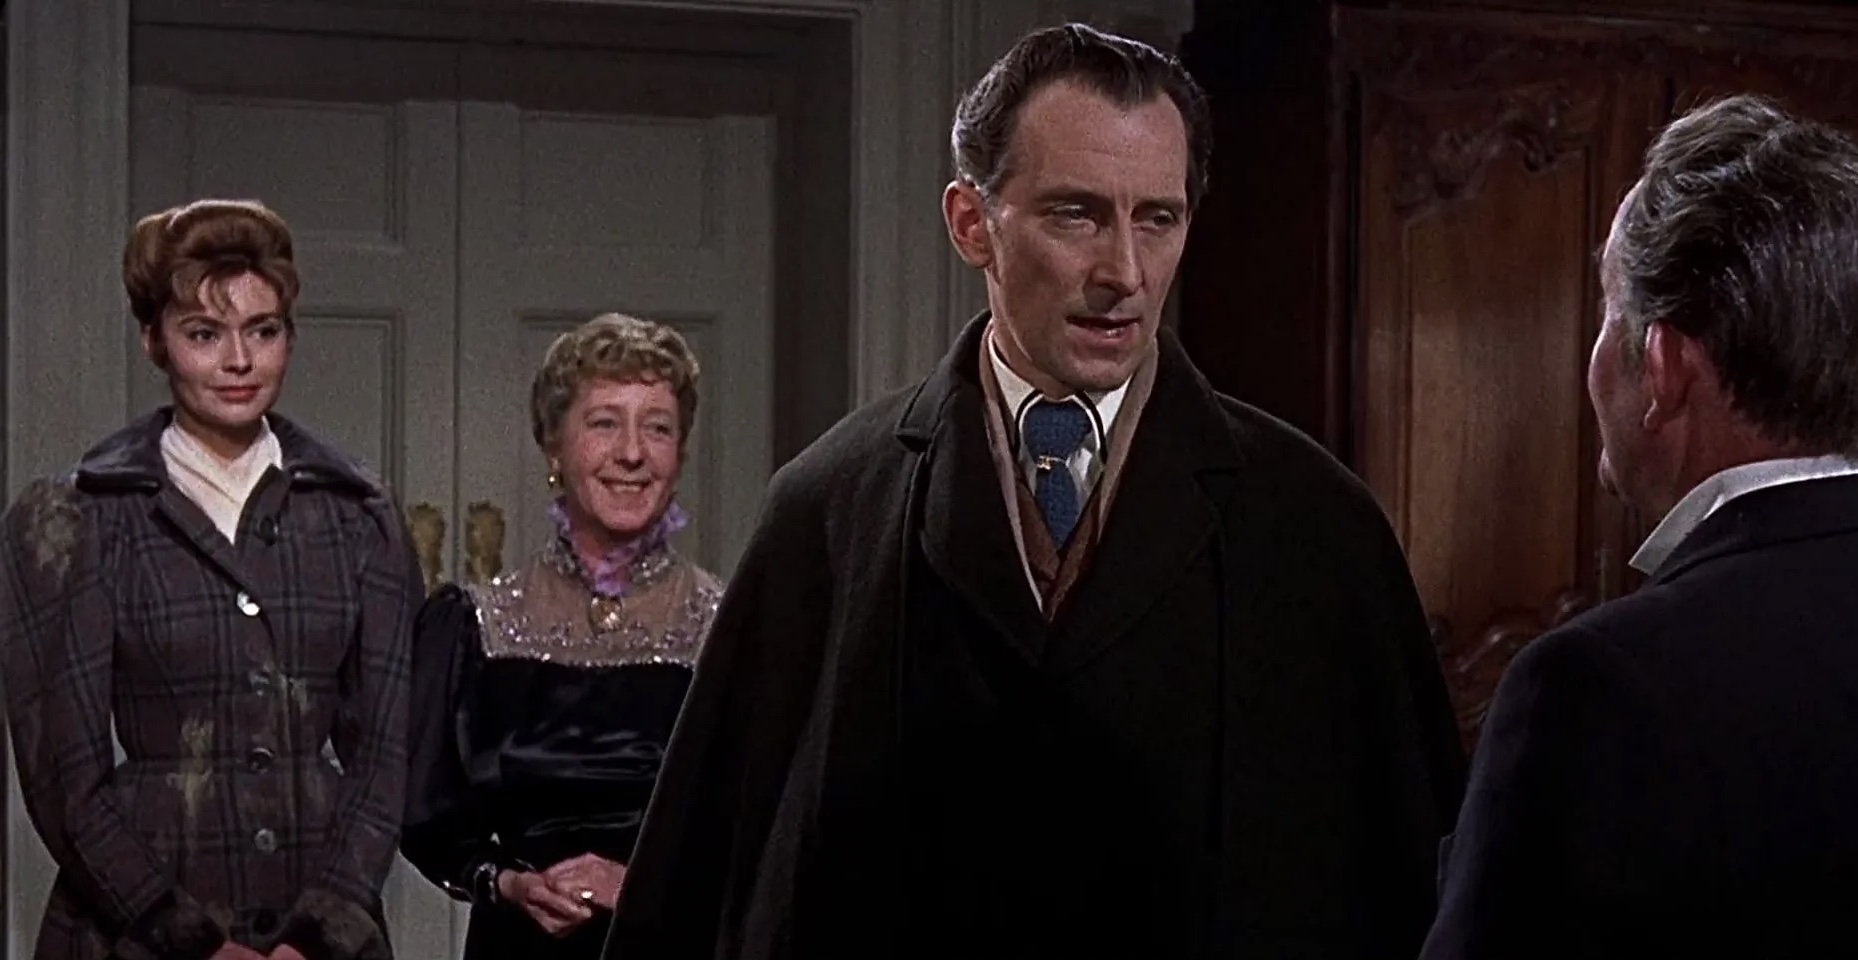 The Brides of Dracula (1960) Screenshot 4 